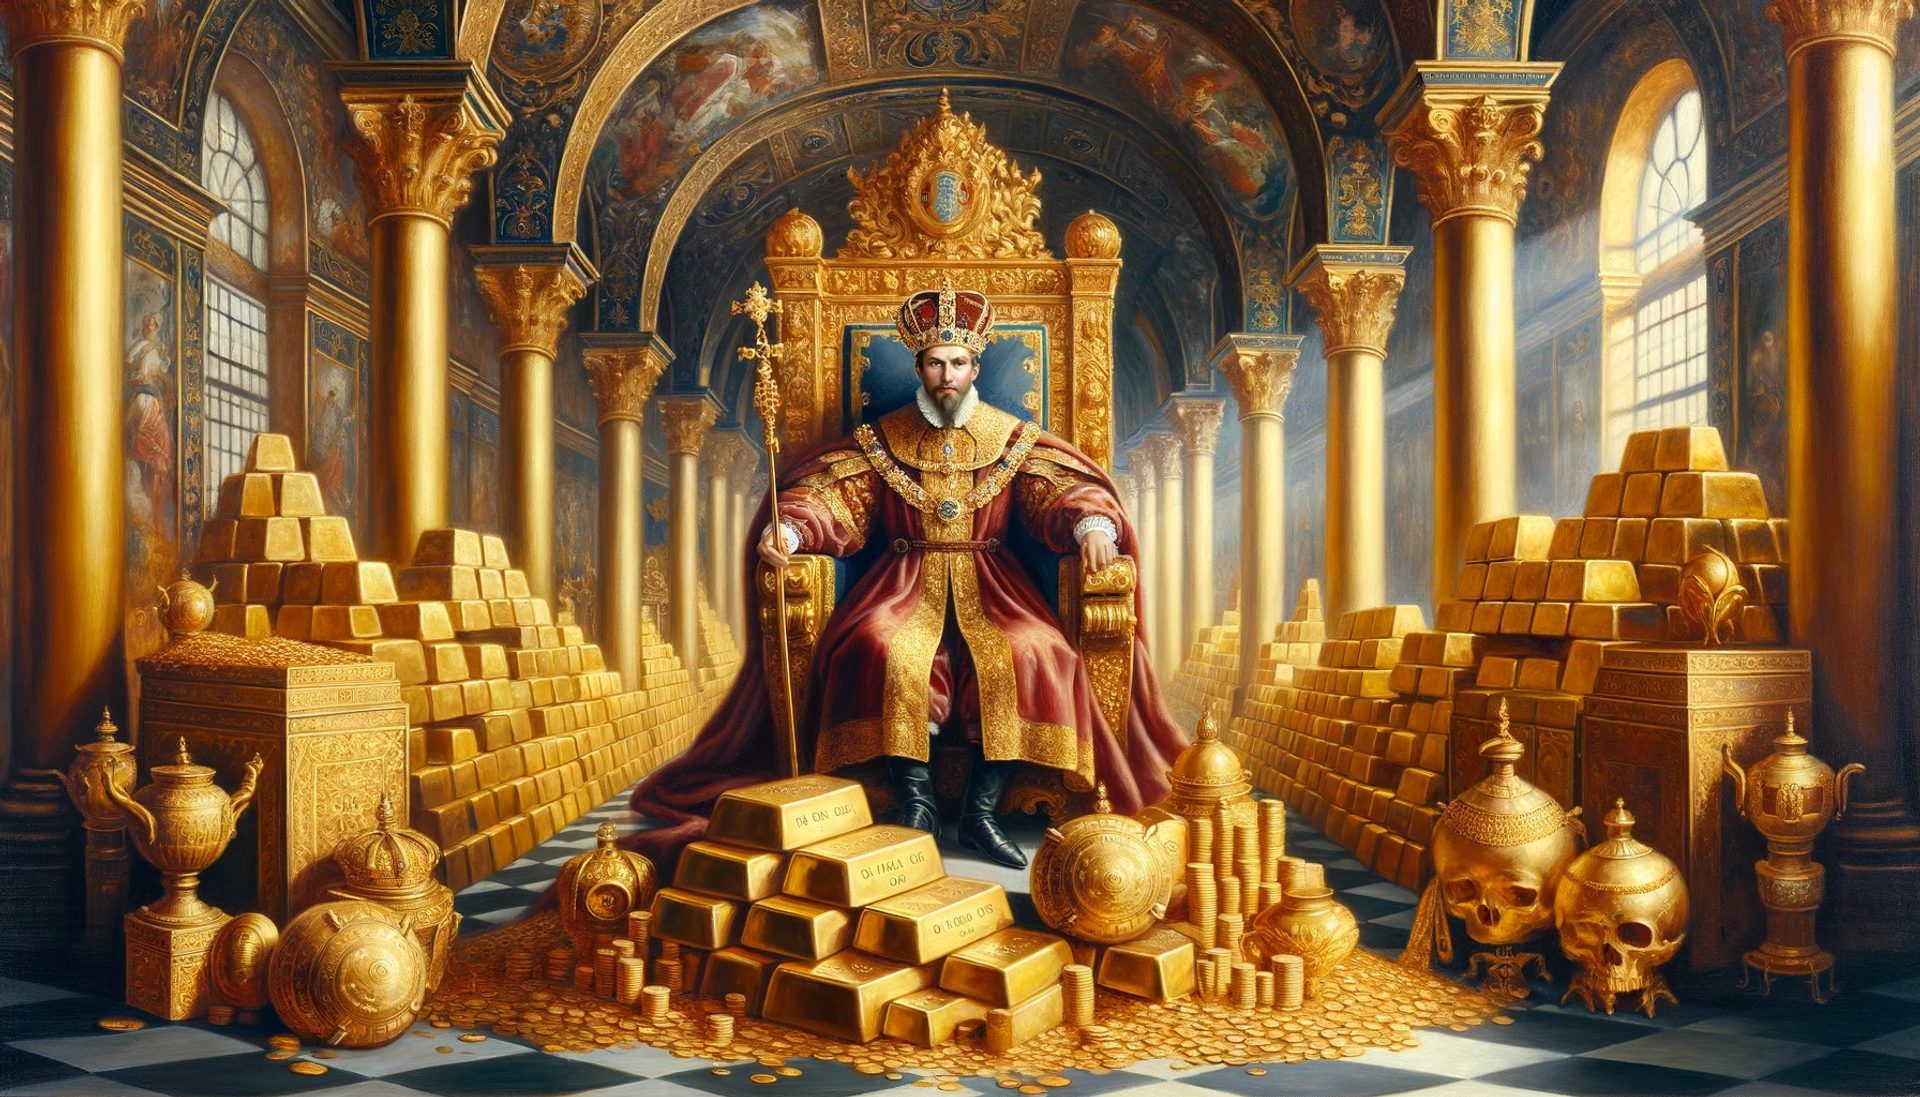 Un monarque entouré de réserves abondantes d’or. À une époque où l’or était le principal indicateur de richesse, chaque monarque en voulait de plus en plus.